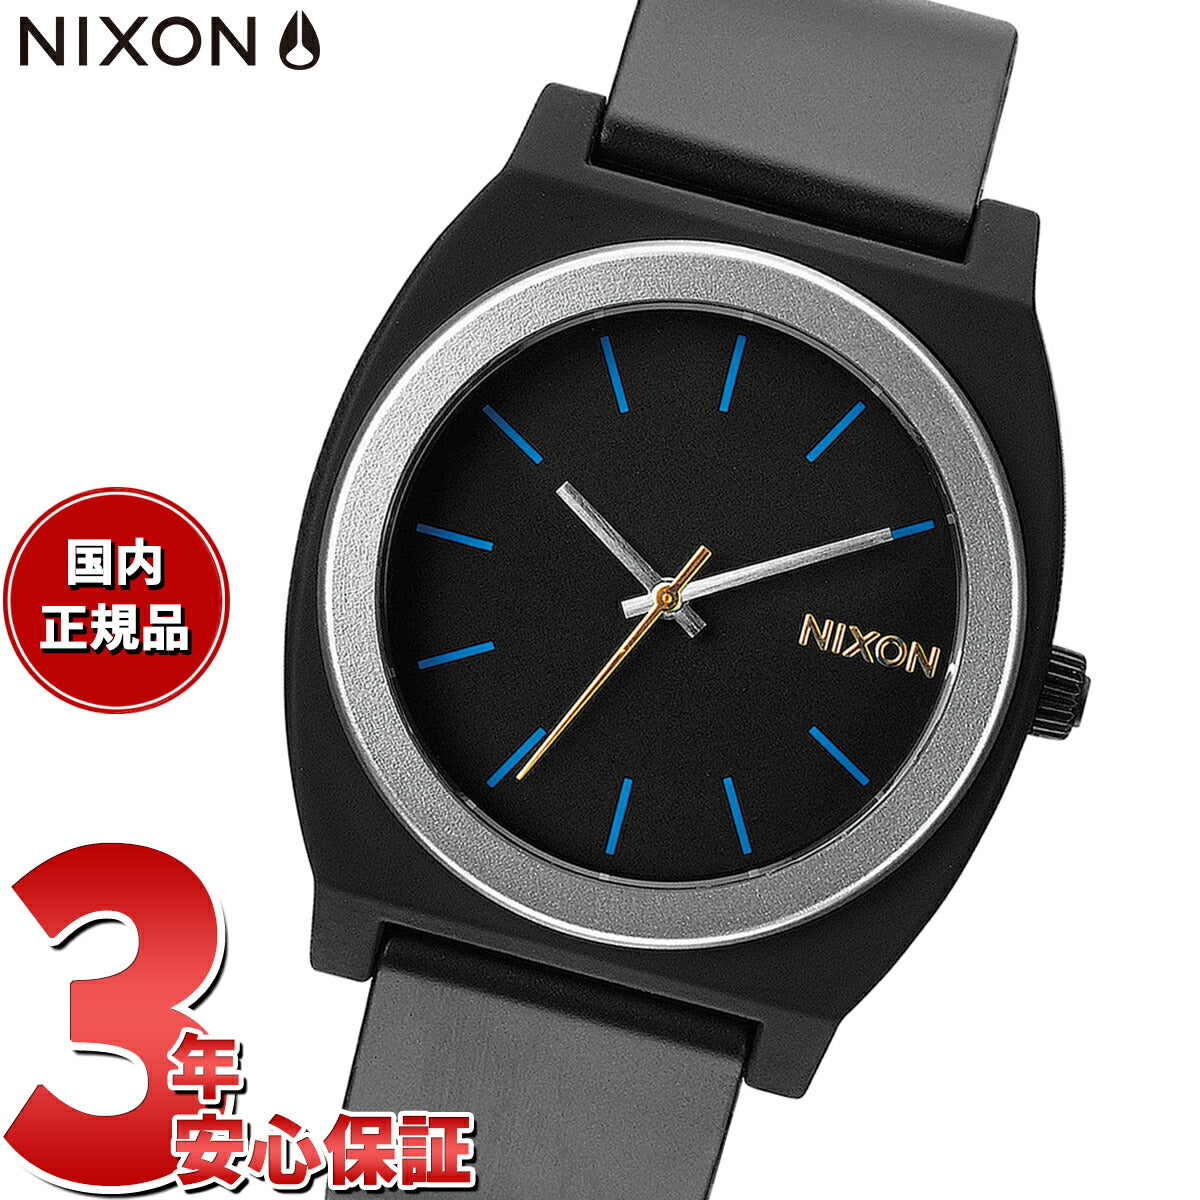 Desear pavo Complaciente ニクソン NIXON タイムテラー P Time Teller P 日本復刻モデル 腕時計 メンズ レディース ミッドナイトGT A1191 –  neel selectshop